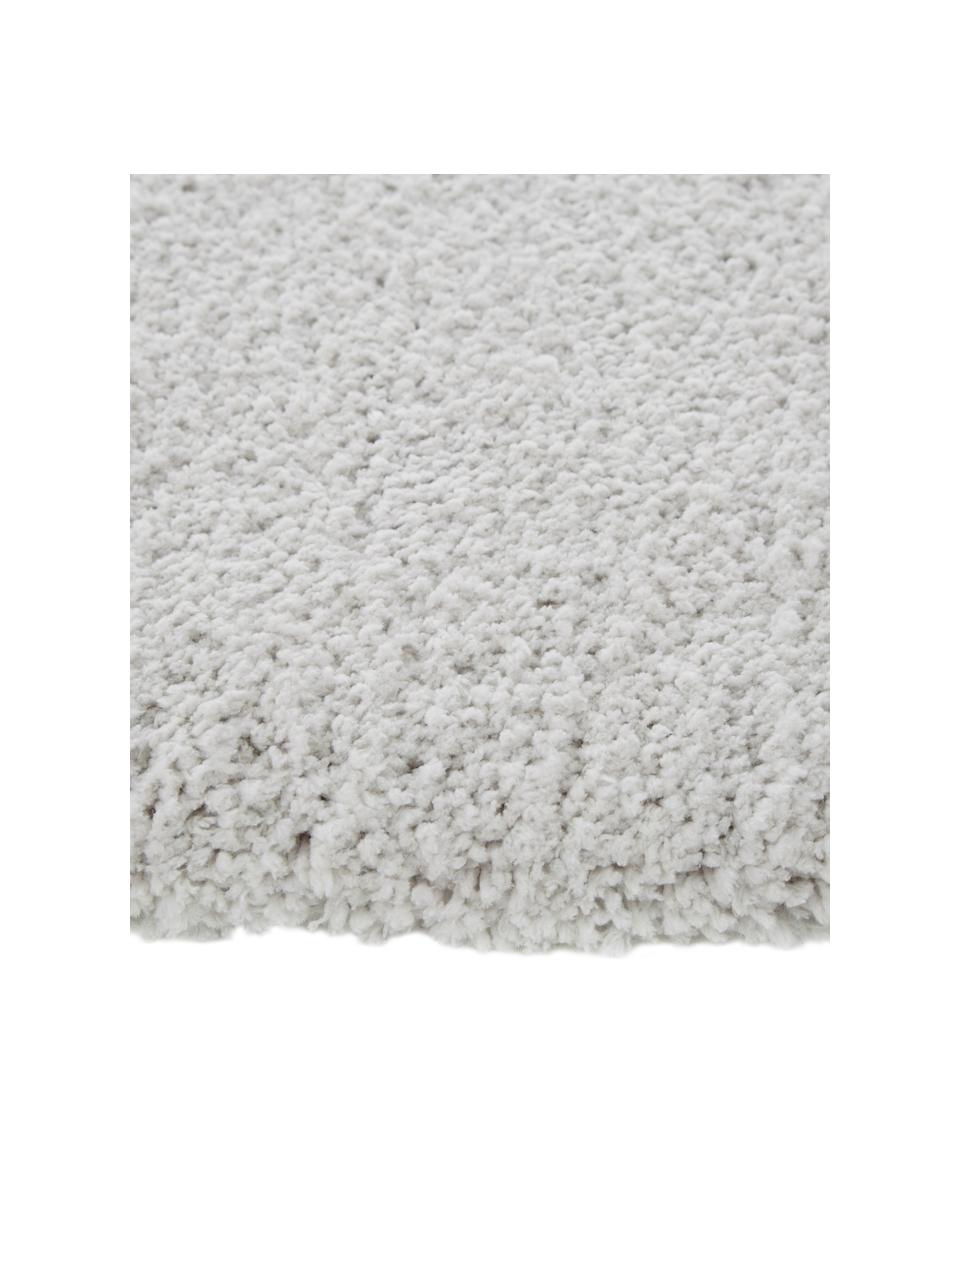 Načechraný kulatý koberec s vysokým vlasem Leighton, Světle šedá, béžová, Ø 120 cm (velikost S)